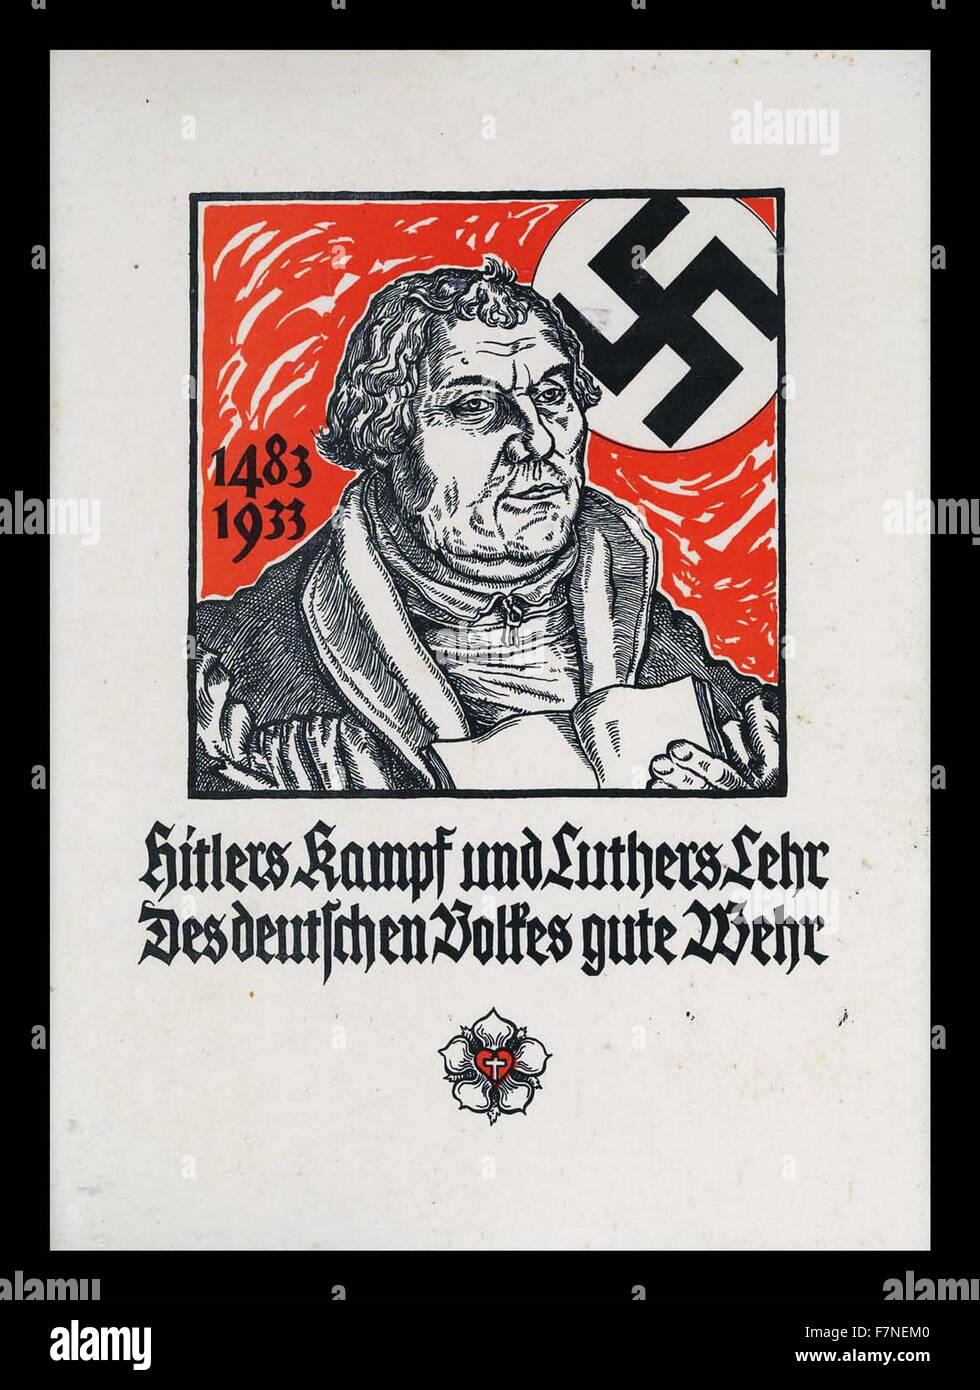 Hitlers Kampf Und Luthers Lehr Des Deutschen Zeit Gute Wehr (Hitlers Kampf und Luthers Lehre bieten, sind die beste Verteidigung für das deutsche Volk) Nazi-Propaganda-Plakat 1933 Stockfoto